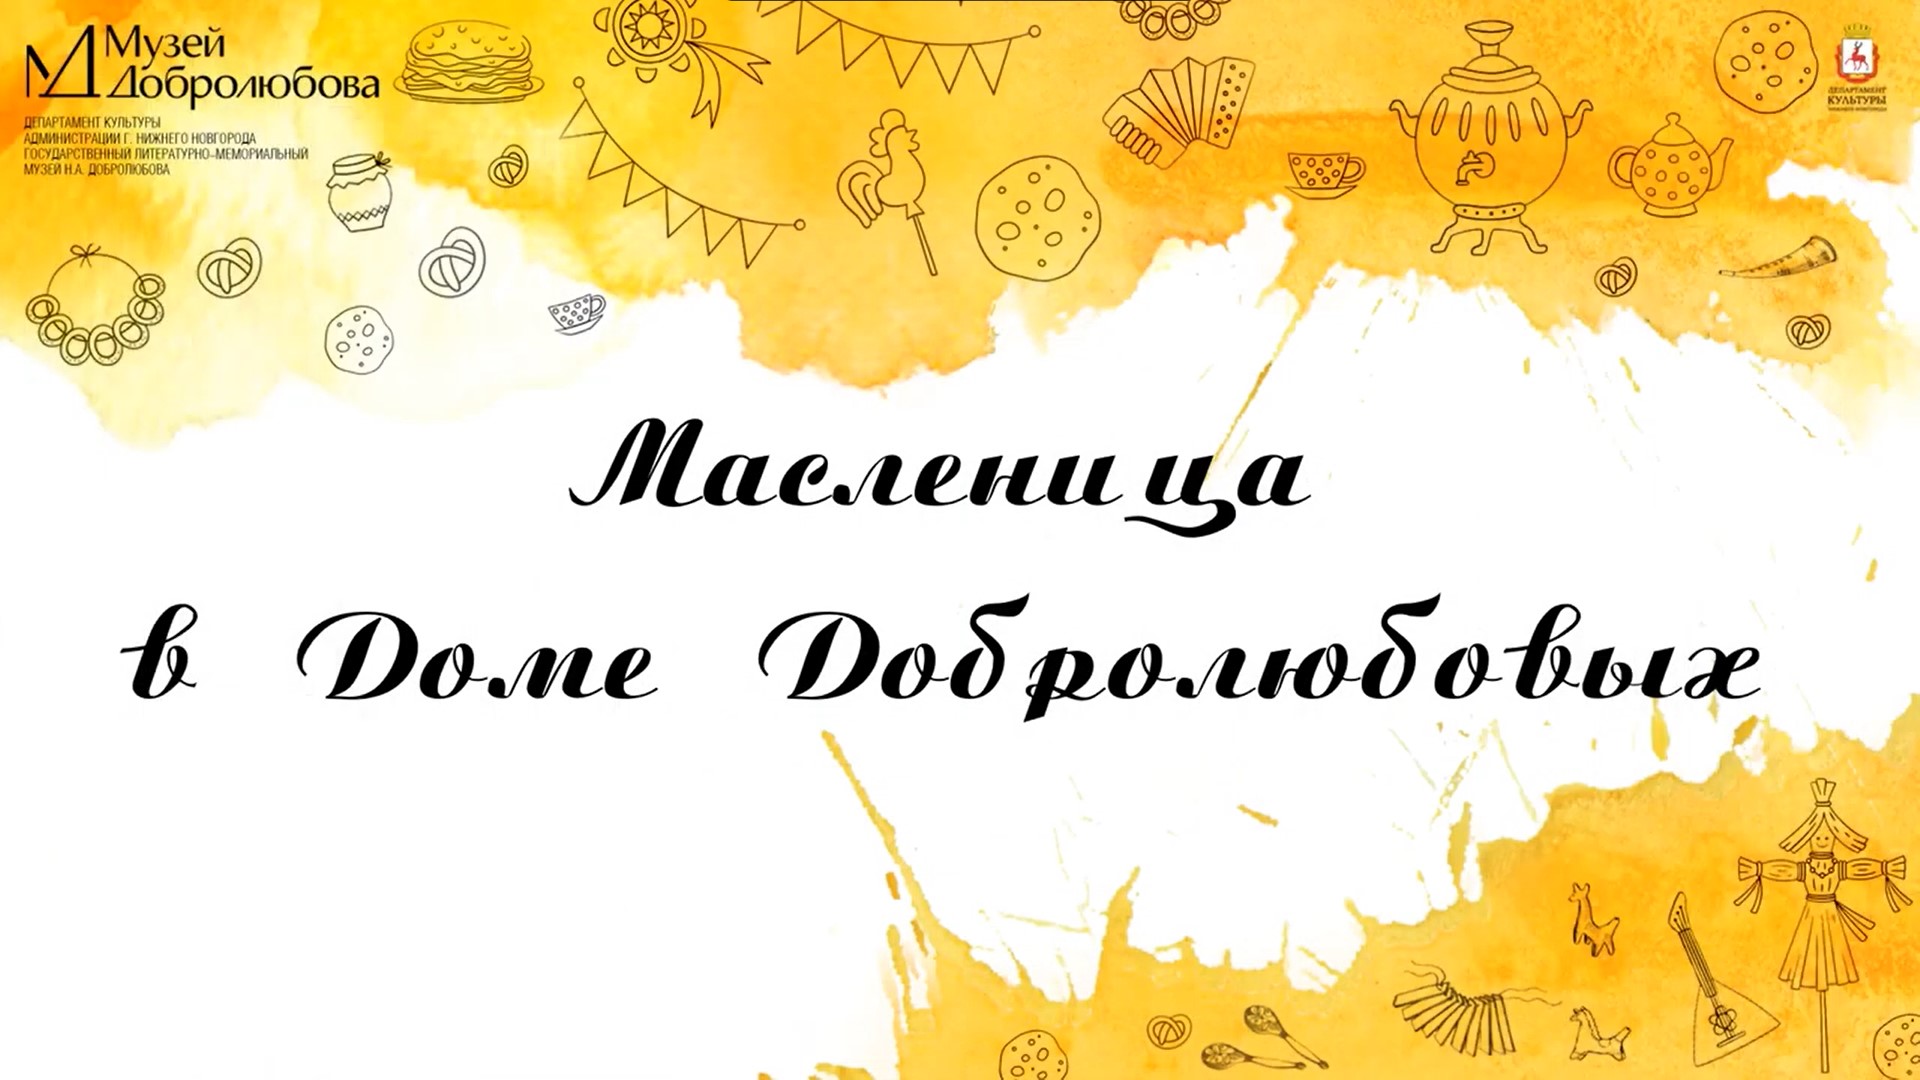 Нижегородский музей Добролюбова опубликовал видеорассказ, посвященный празднованию Масленицы 